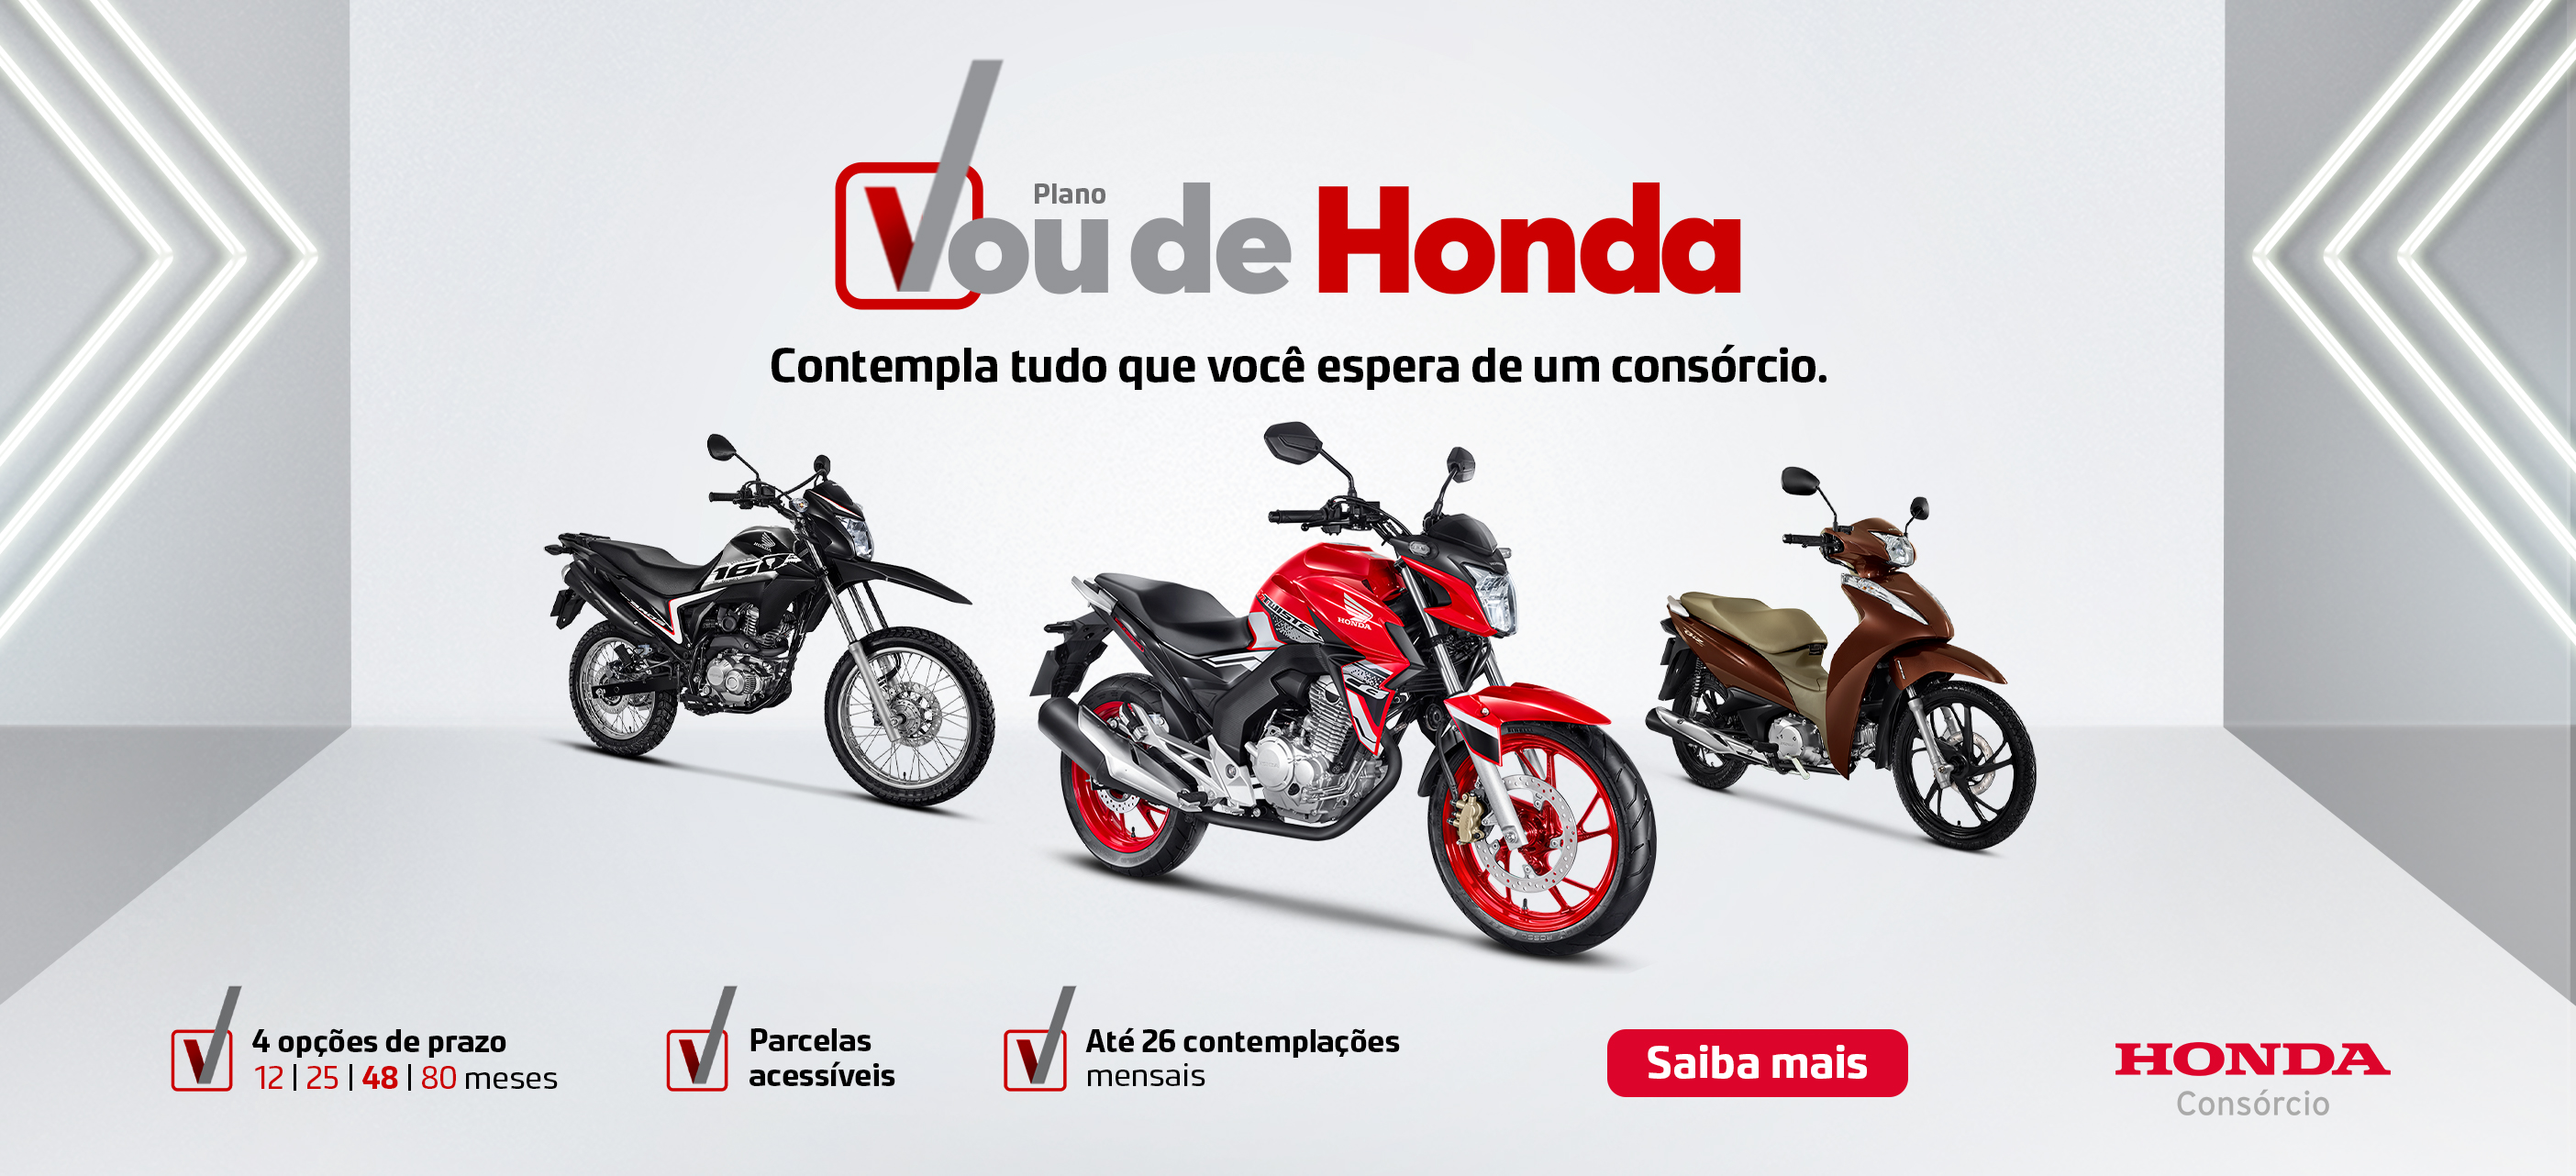 Consórcio Honda Motos é na Endo Moto